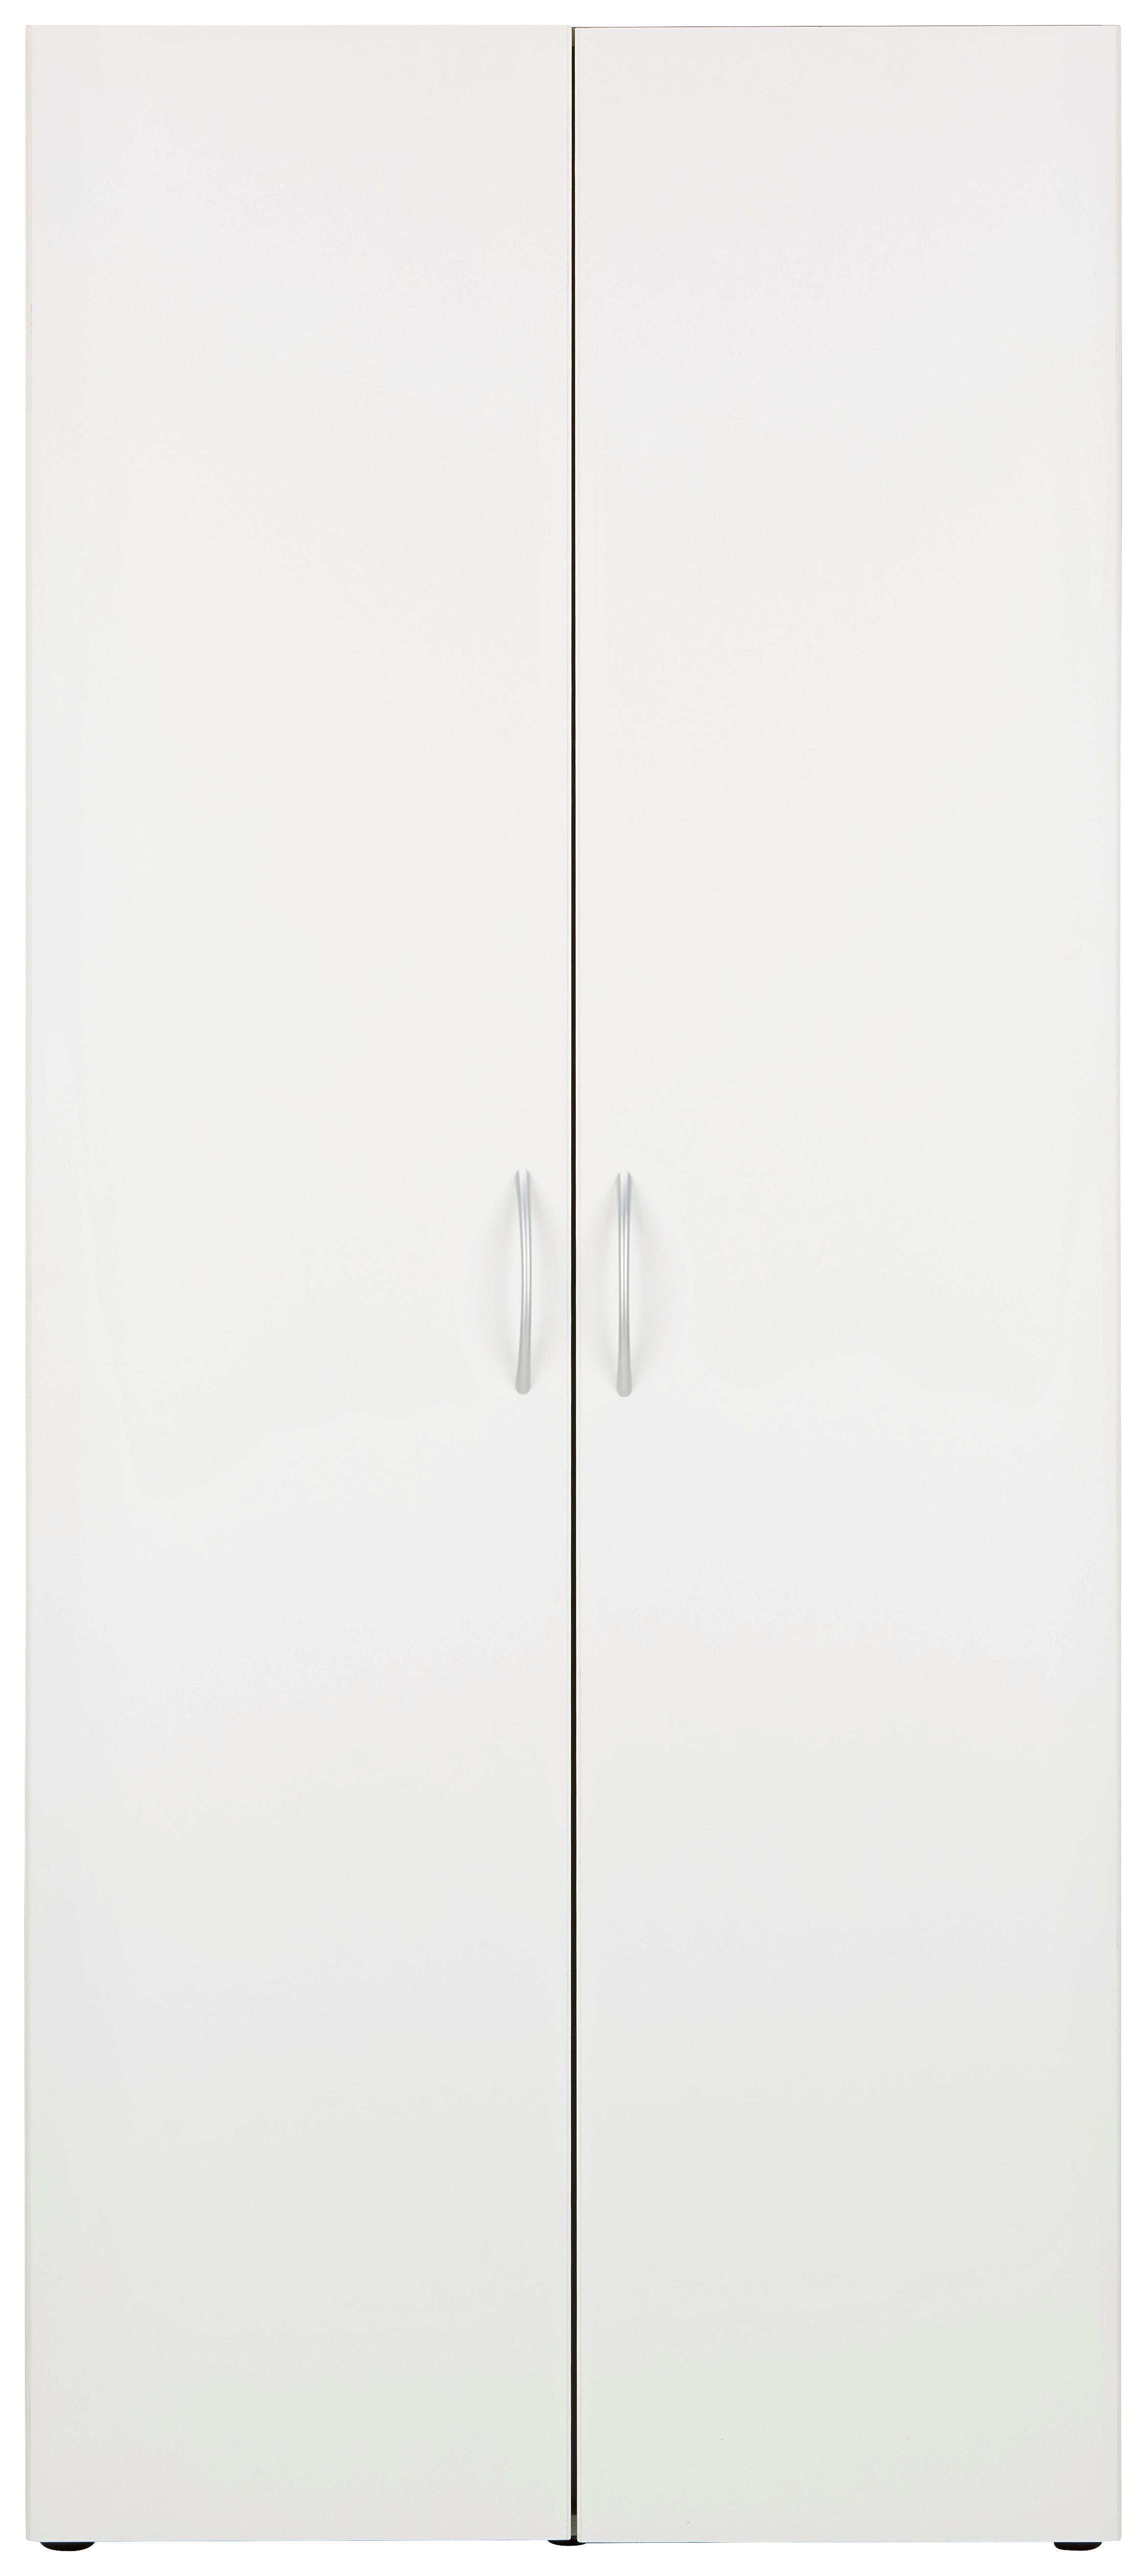 Víceúčelová Skříň Mrk - bílá/barvy hliníku, Konvenční, kompozitní dřevo/plast (80/185/40cm) - Modern Living